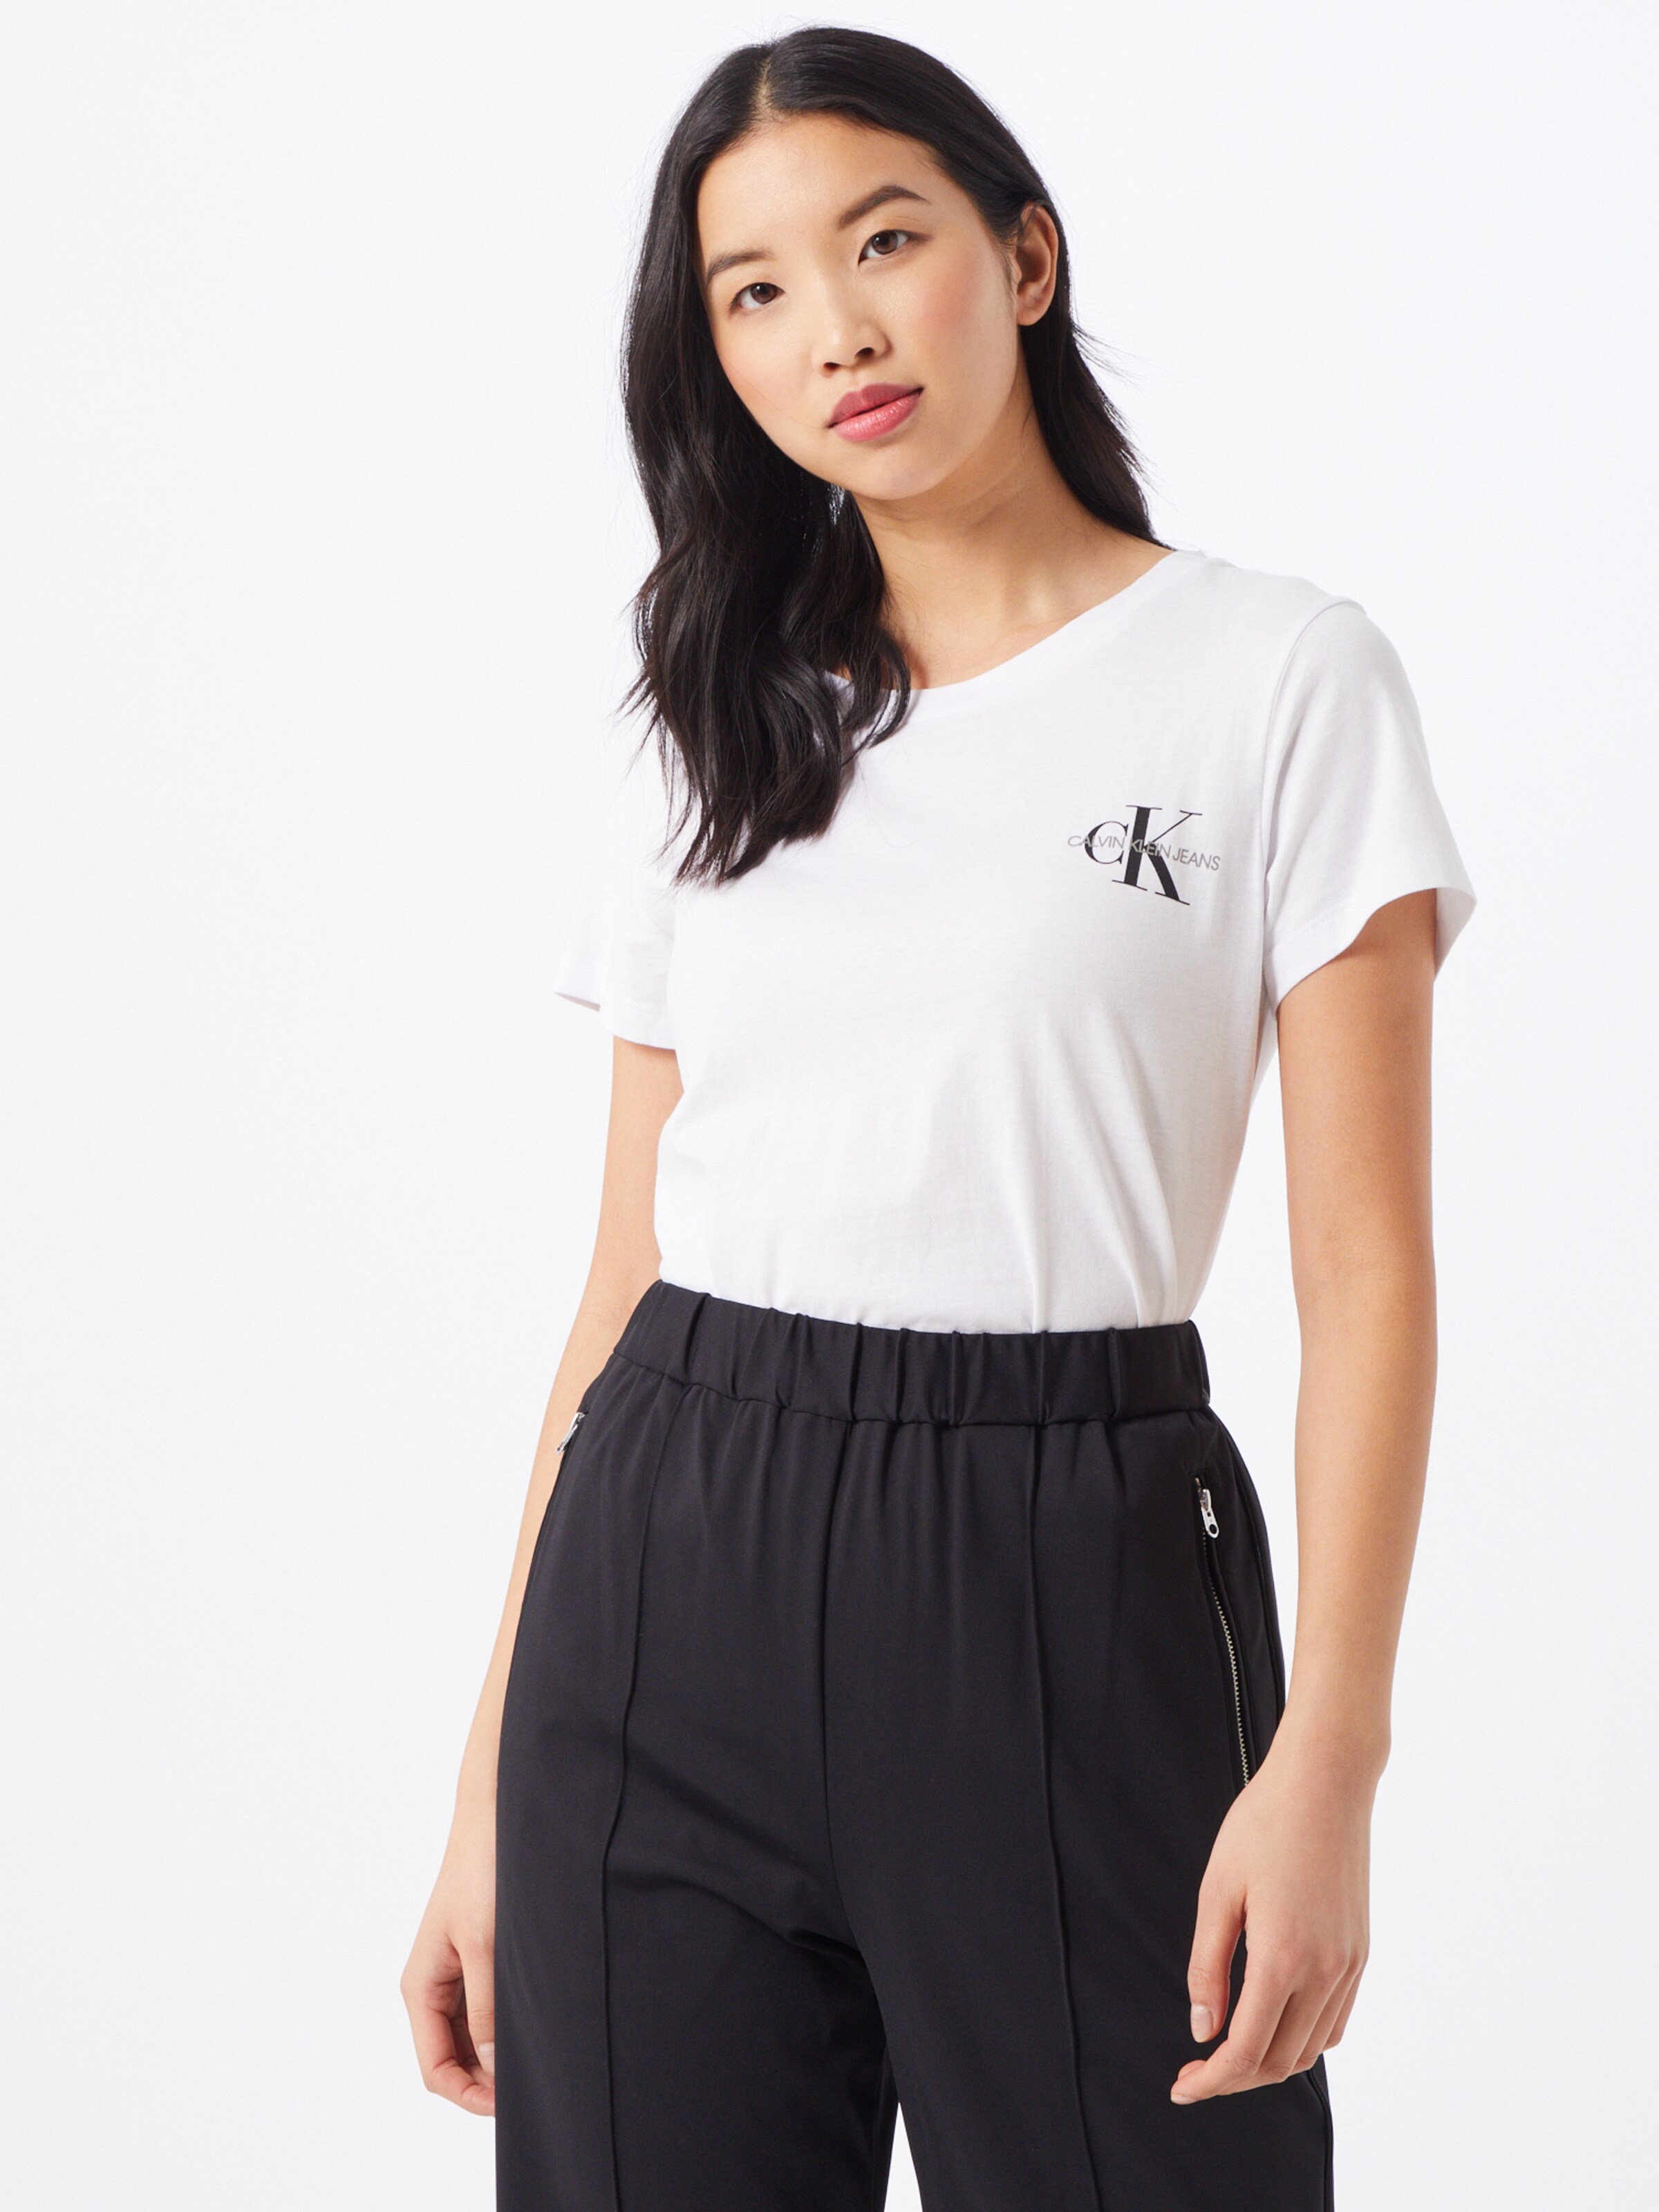 Frauen Shirts & Tops Calvin Klein Jeans Shirt in Schwarz, Weiß - JR41920